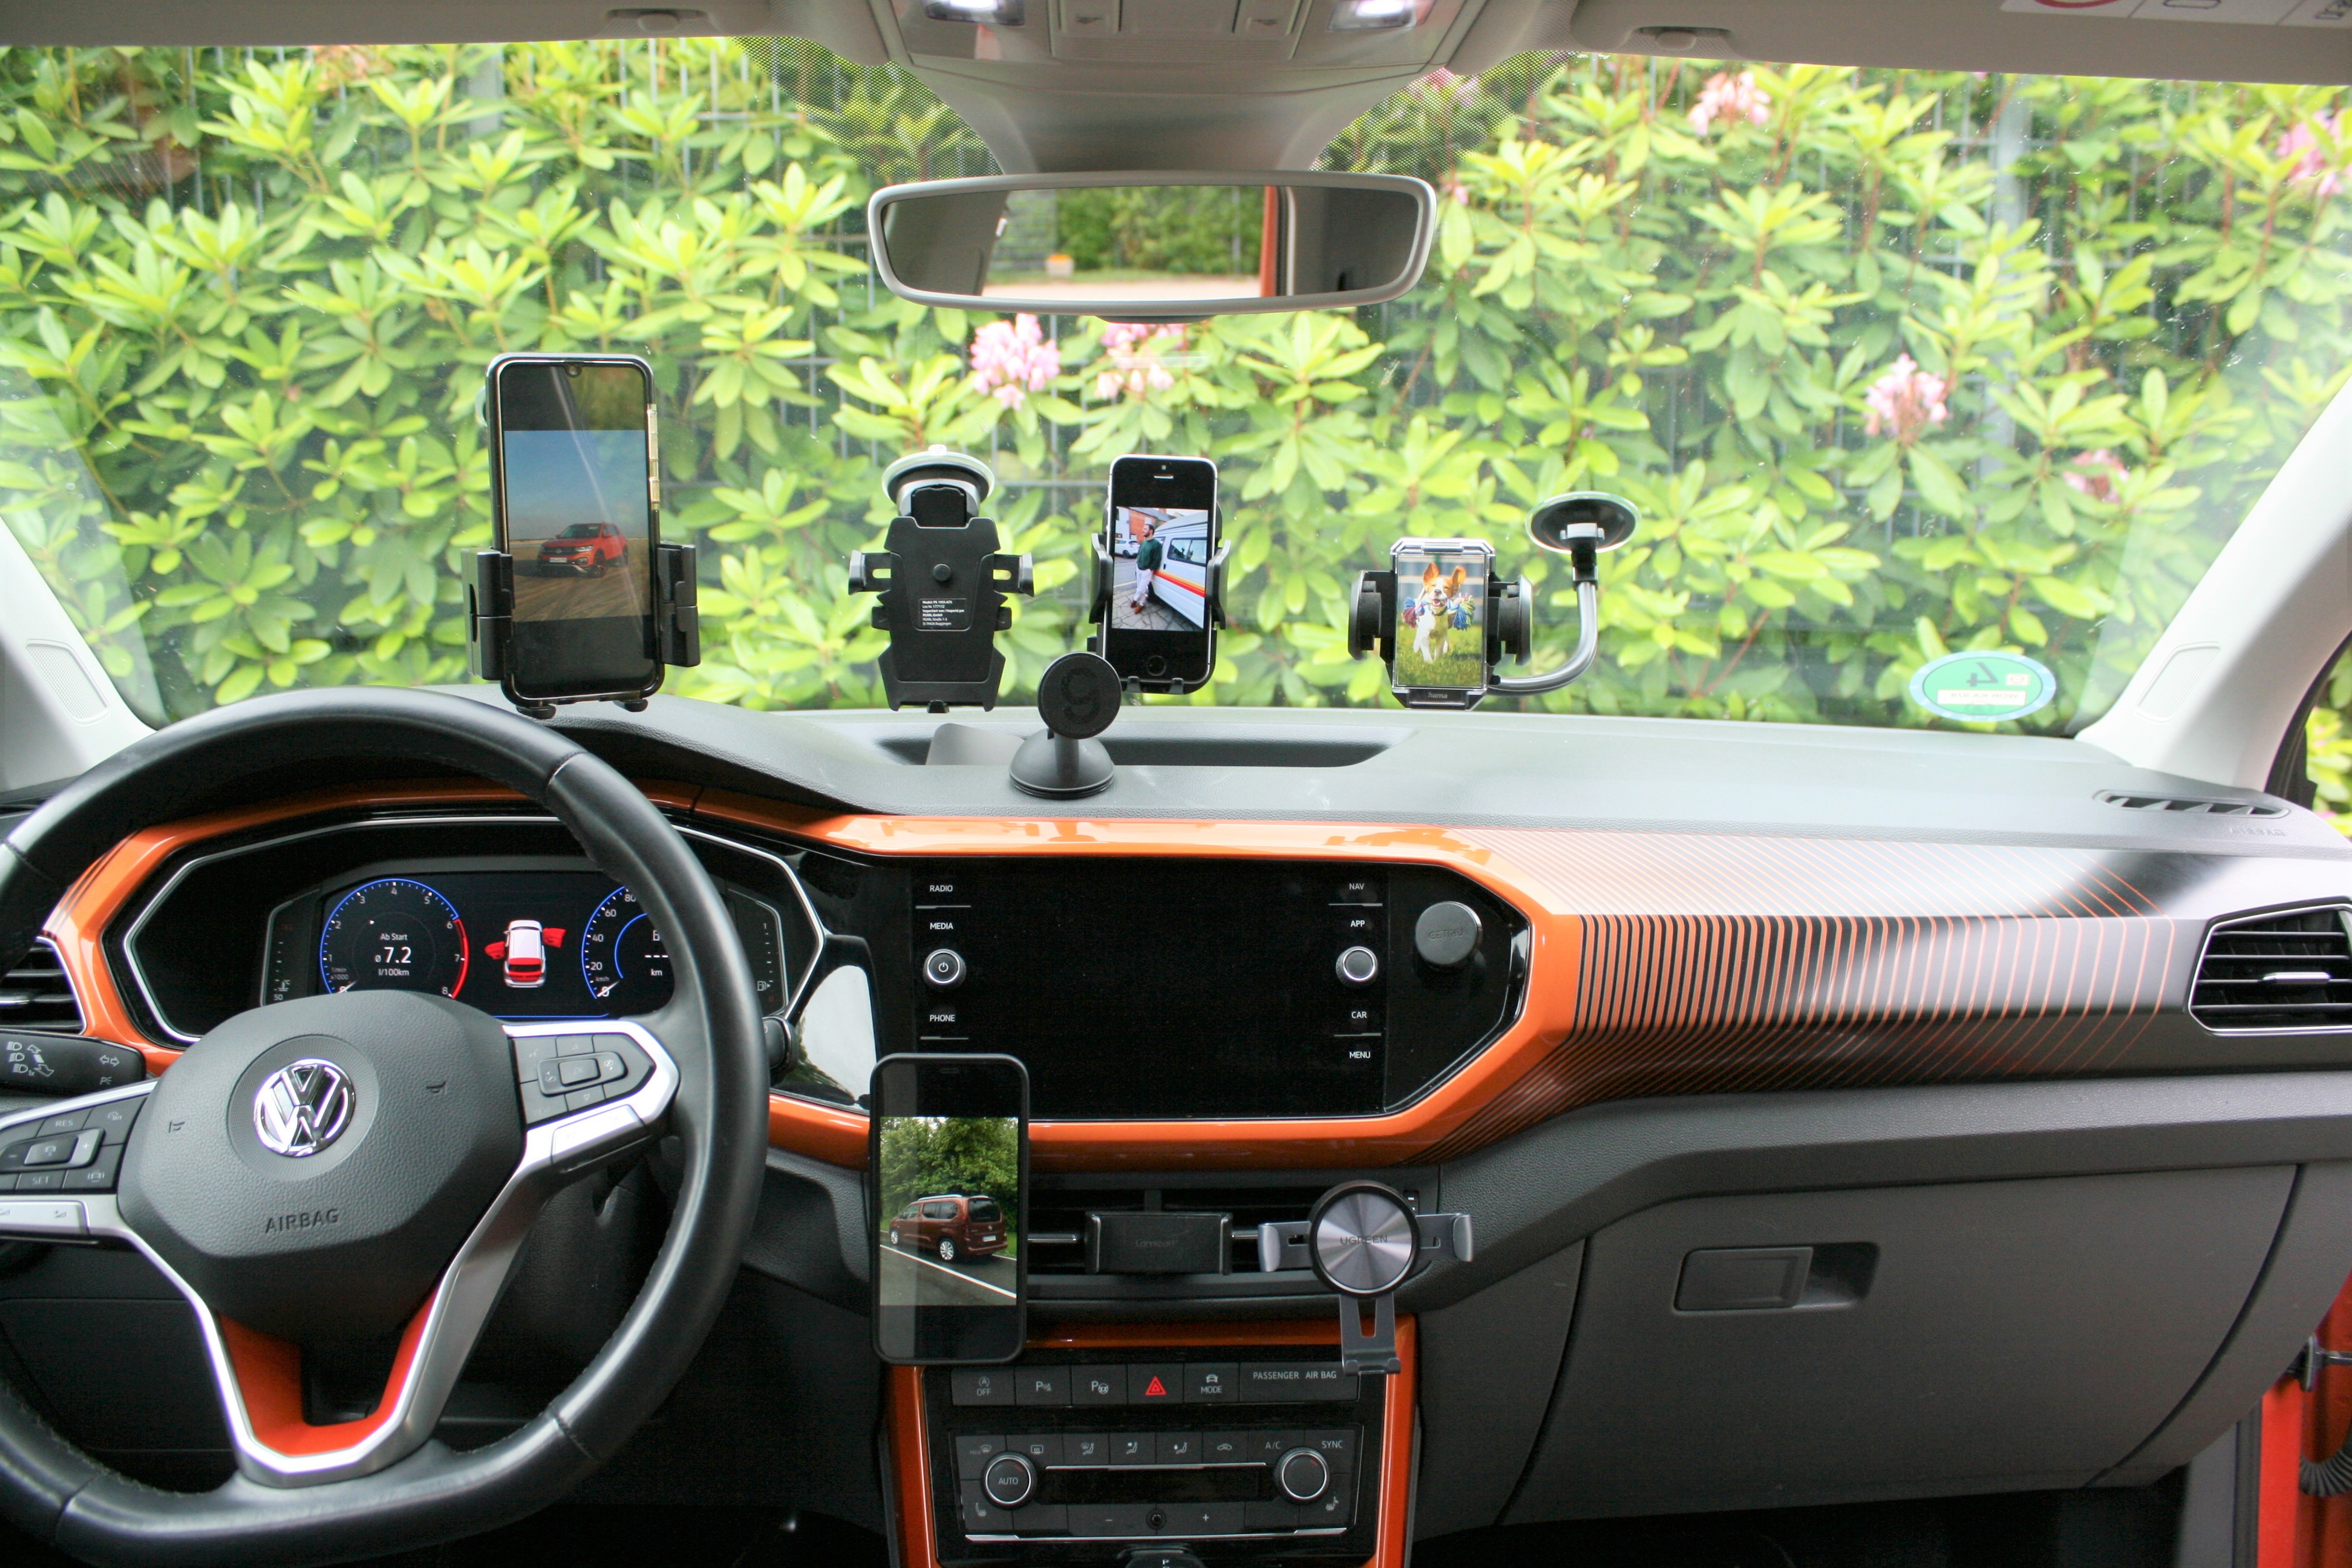 Handyhalterung fürs Auto im Test - AUTO BILD